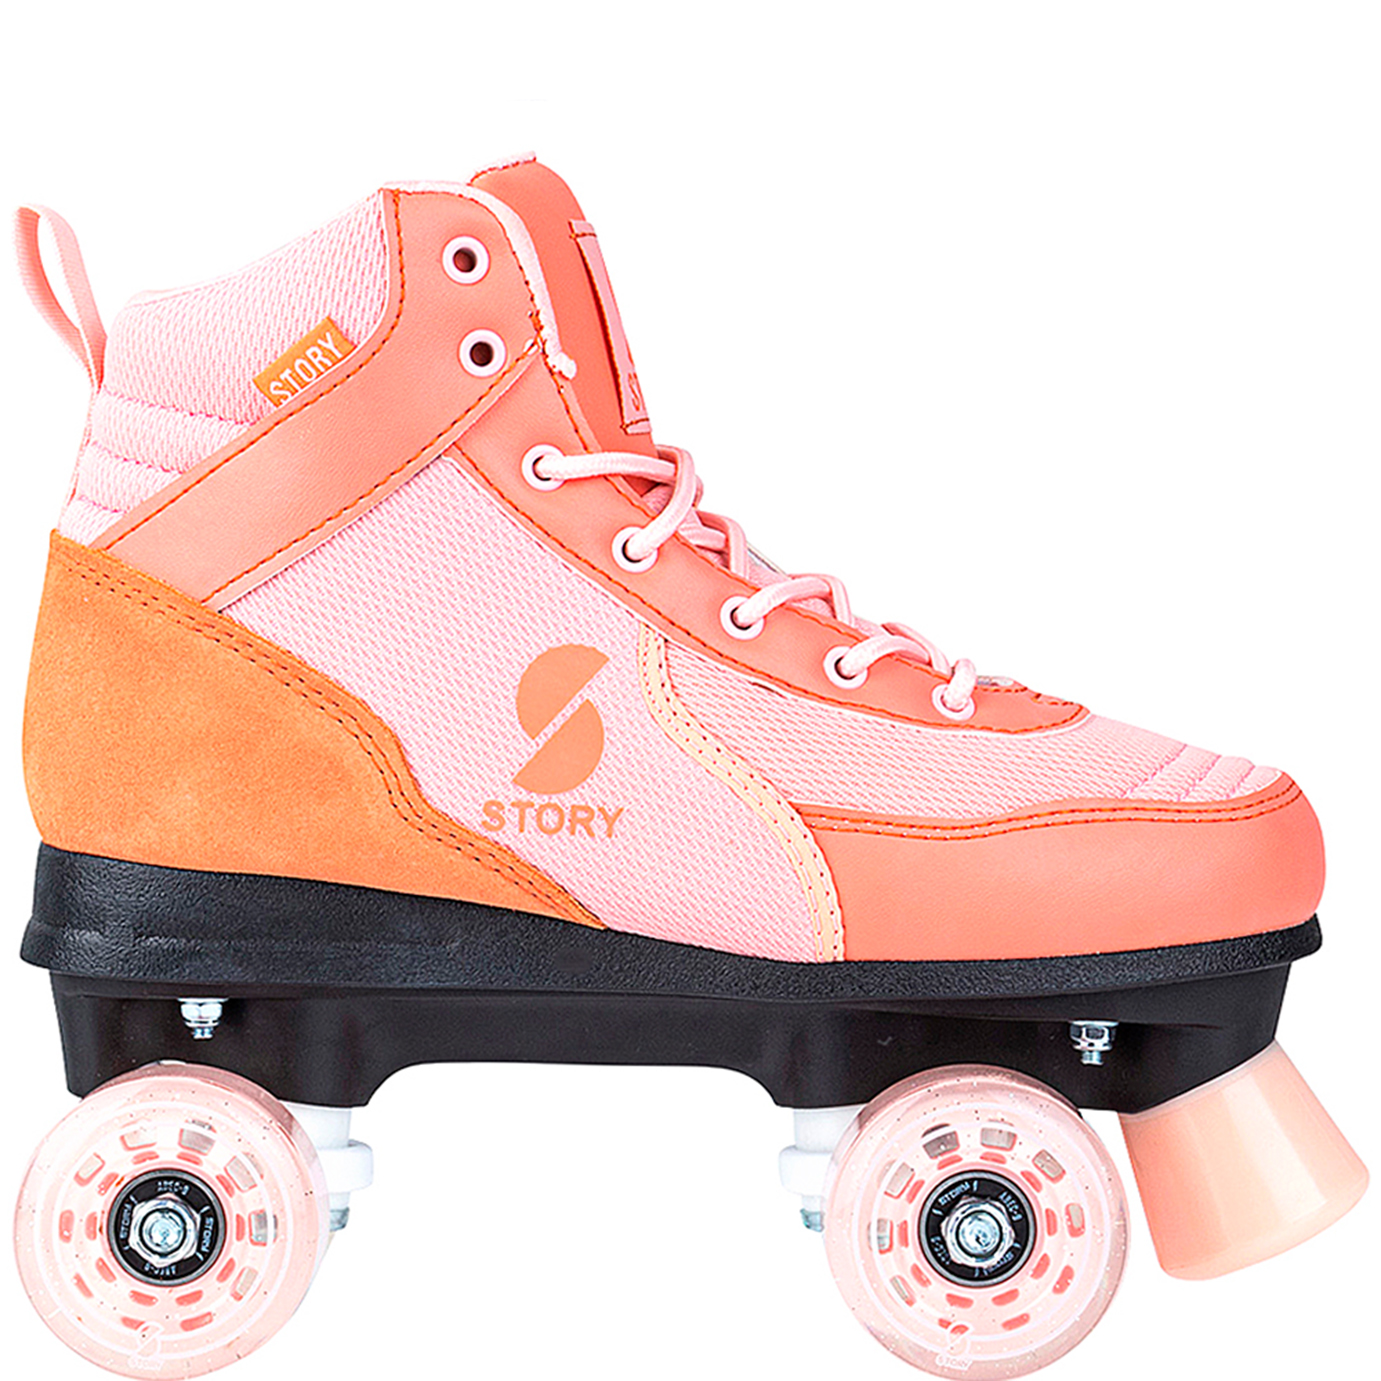 https://euroskateshop.nl/story-cooper-side-by-side-roller-skates.html?2=799